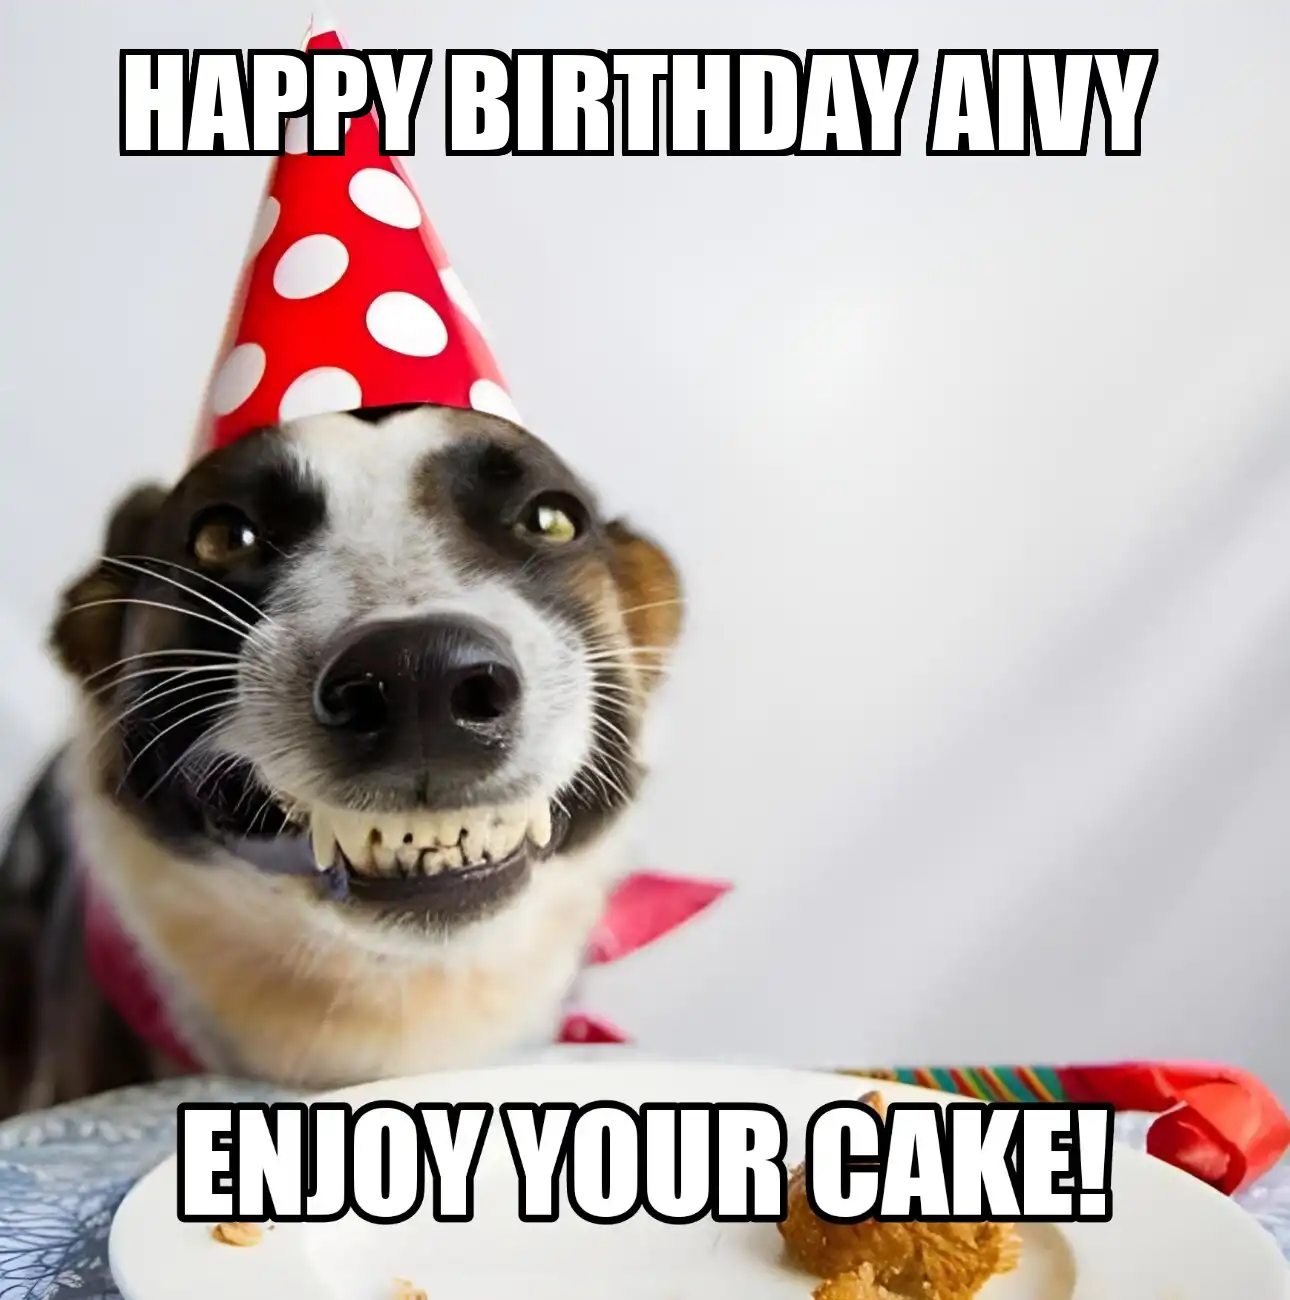 Happy Birthday Aivy Enjoy Your Cake Dog Meme